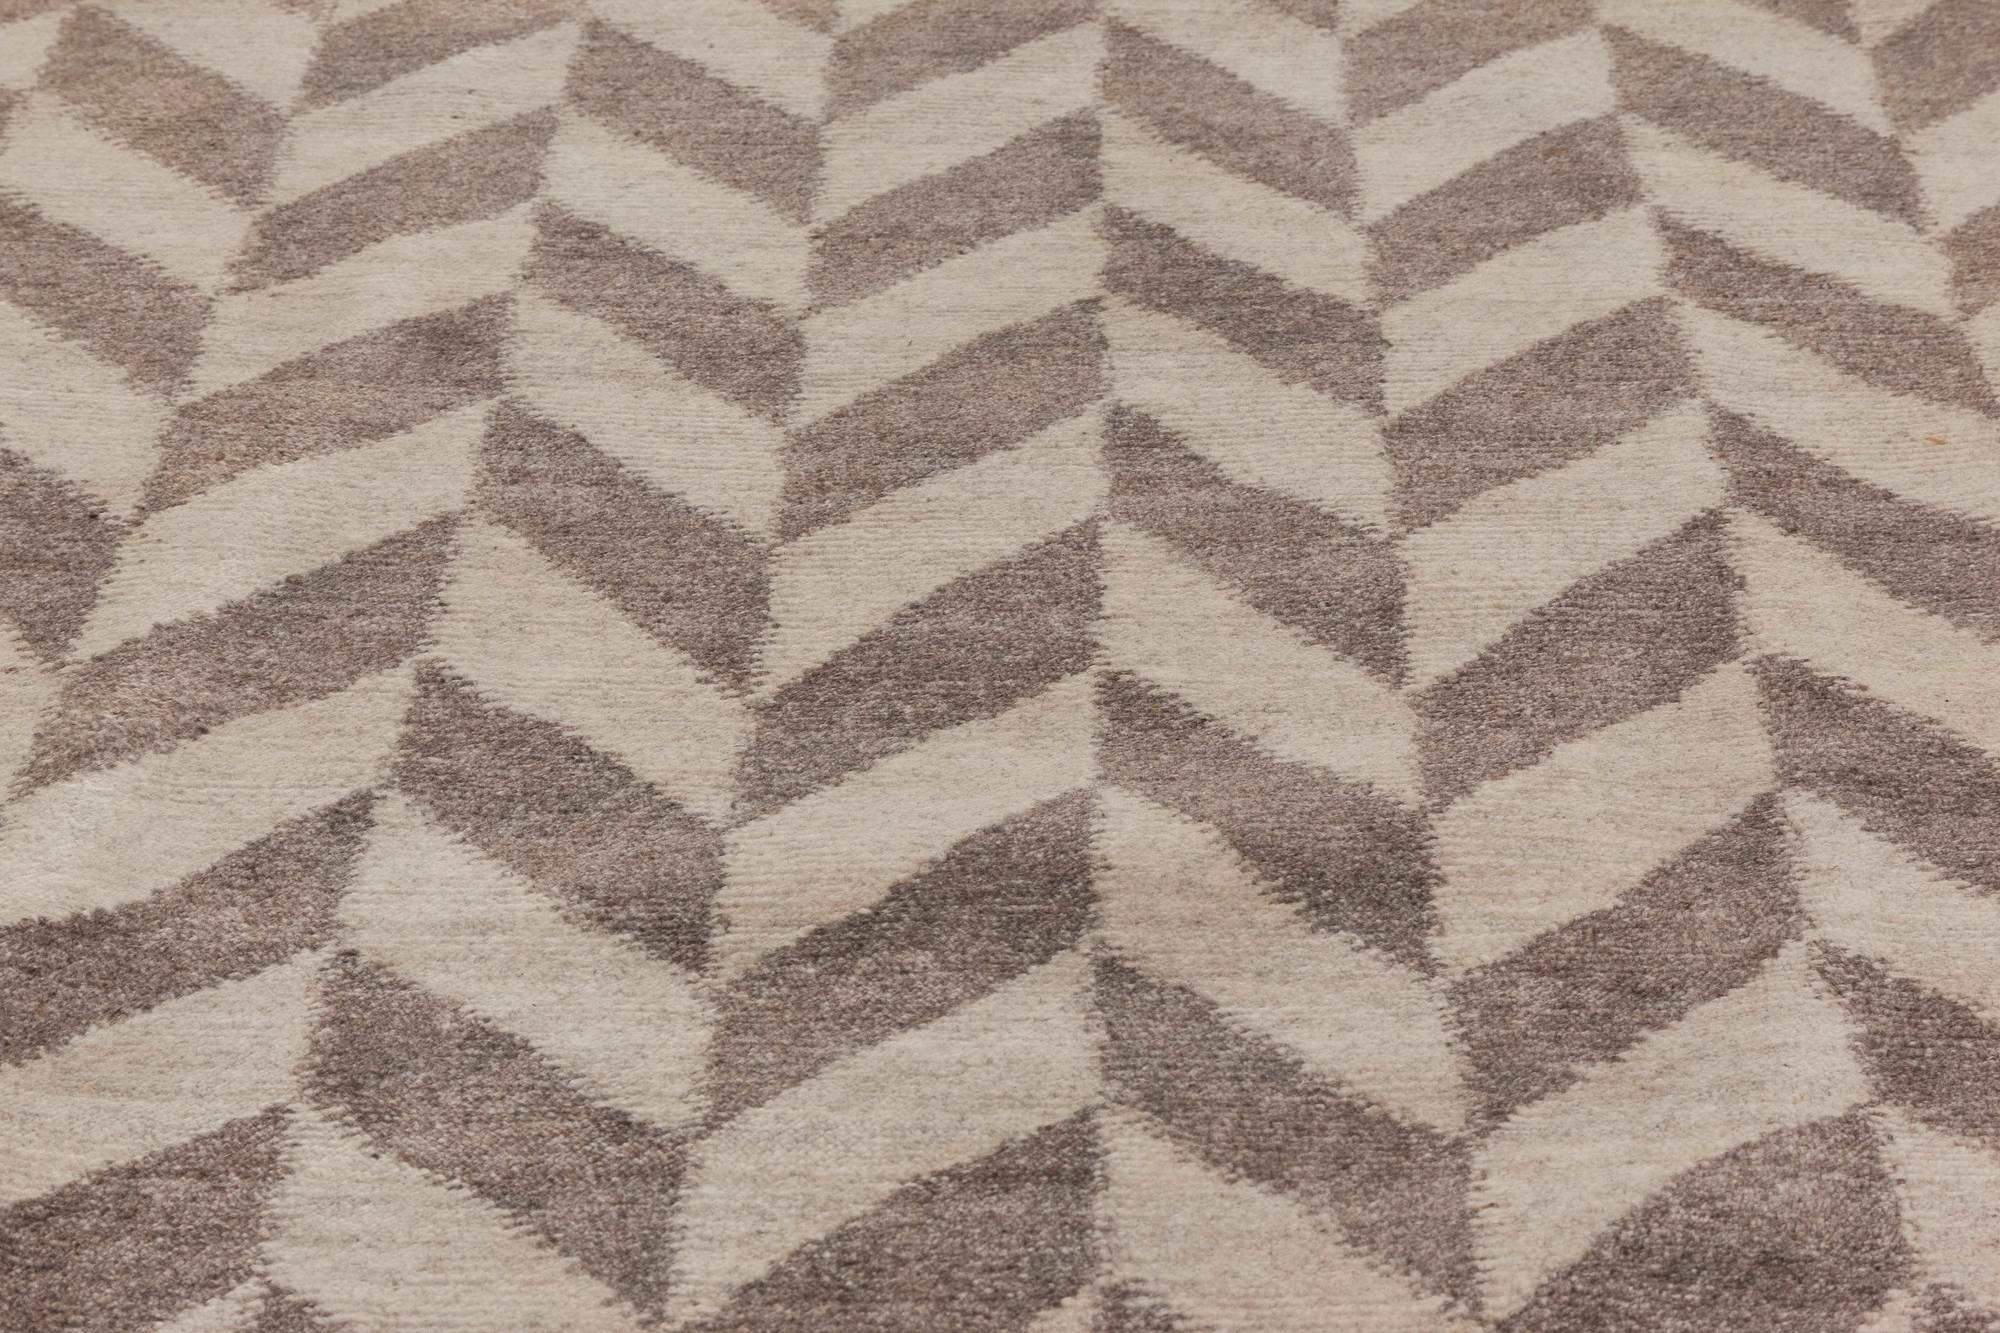 Oversized Geometric Terra Rug in Natural Wool by Doris Leslie Blau
Size: 14'0